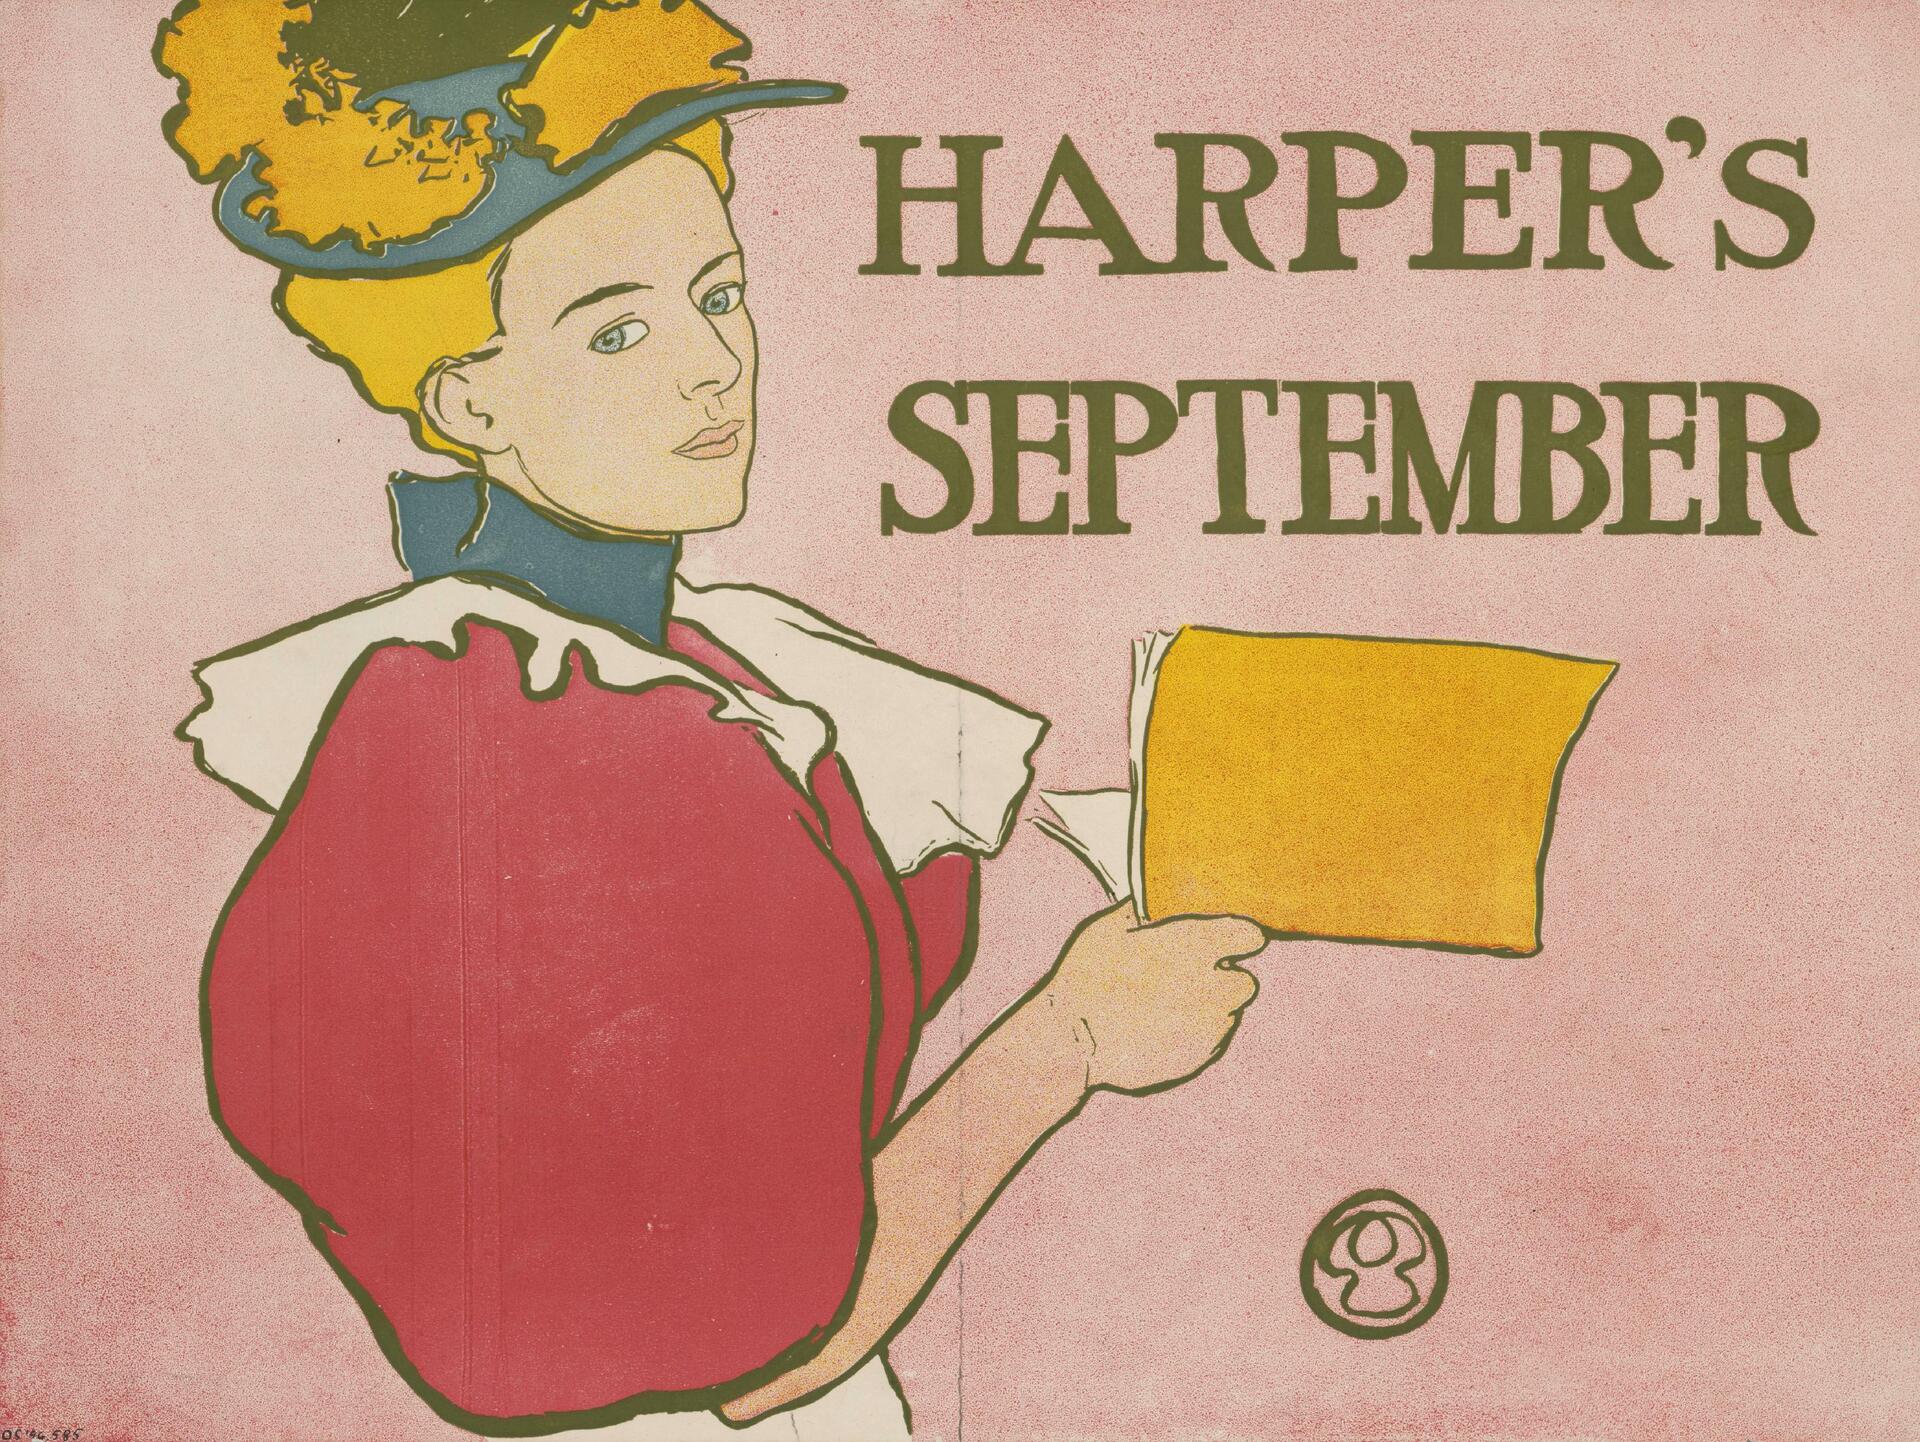 Harper's September.jpg